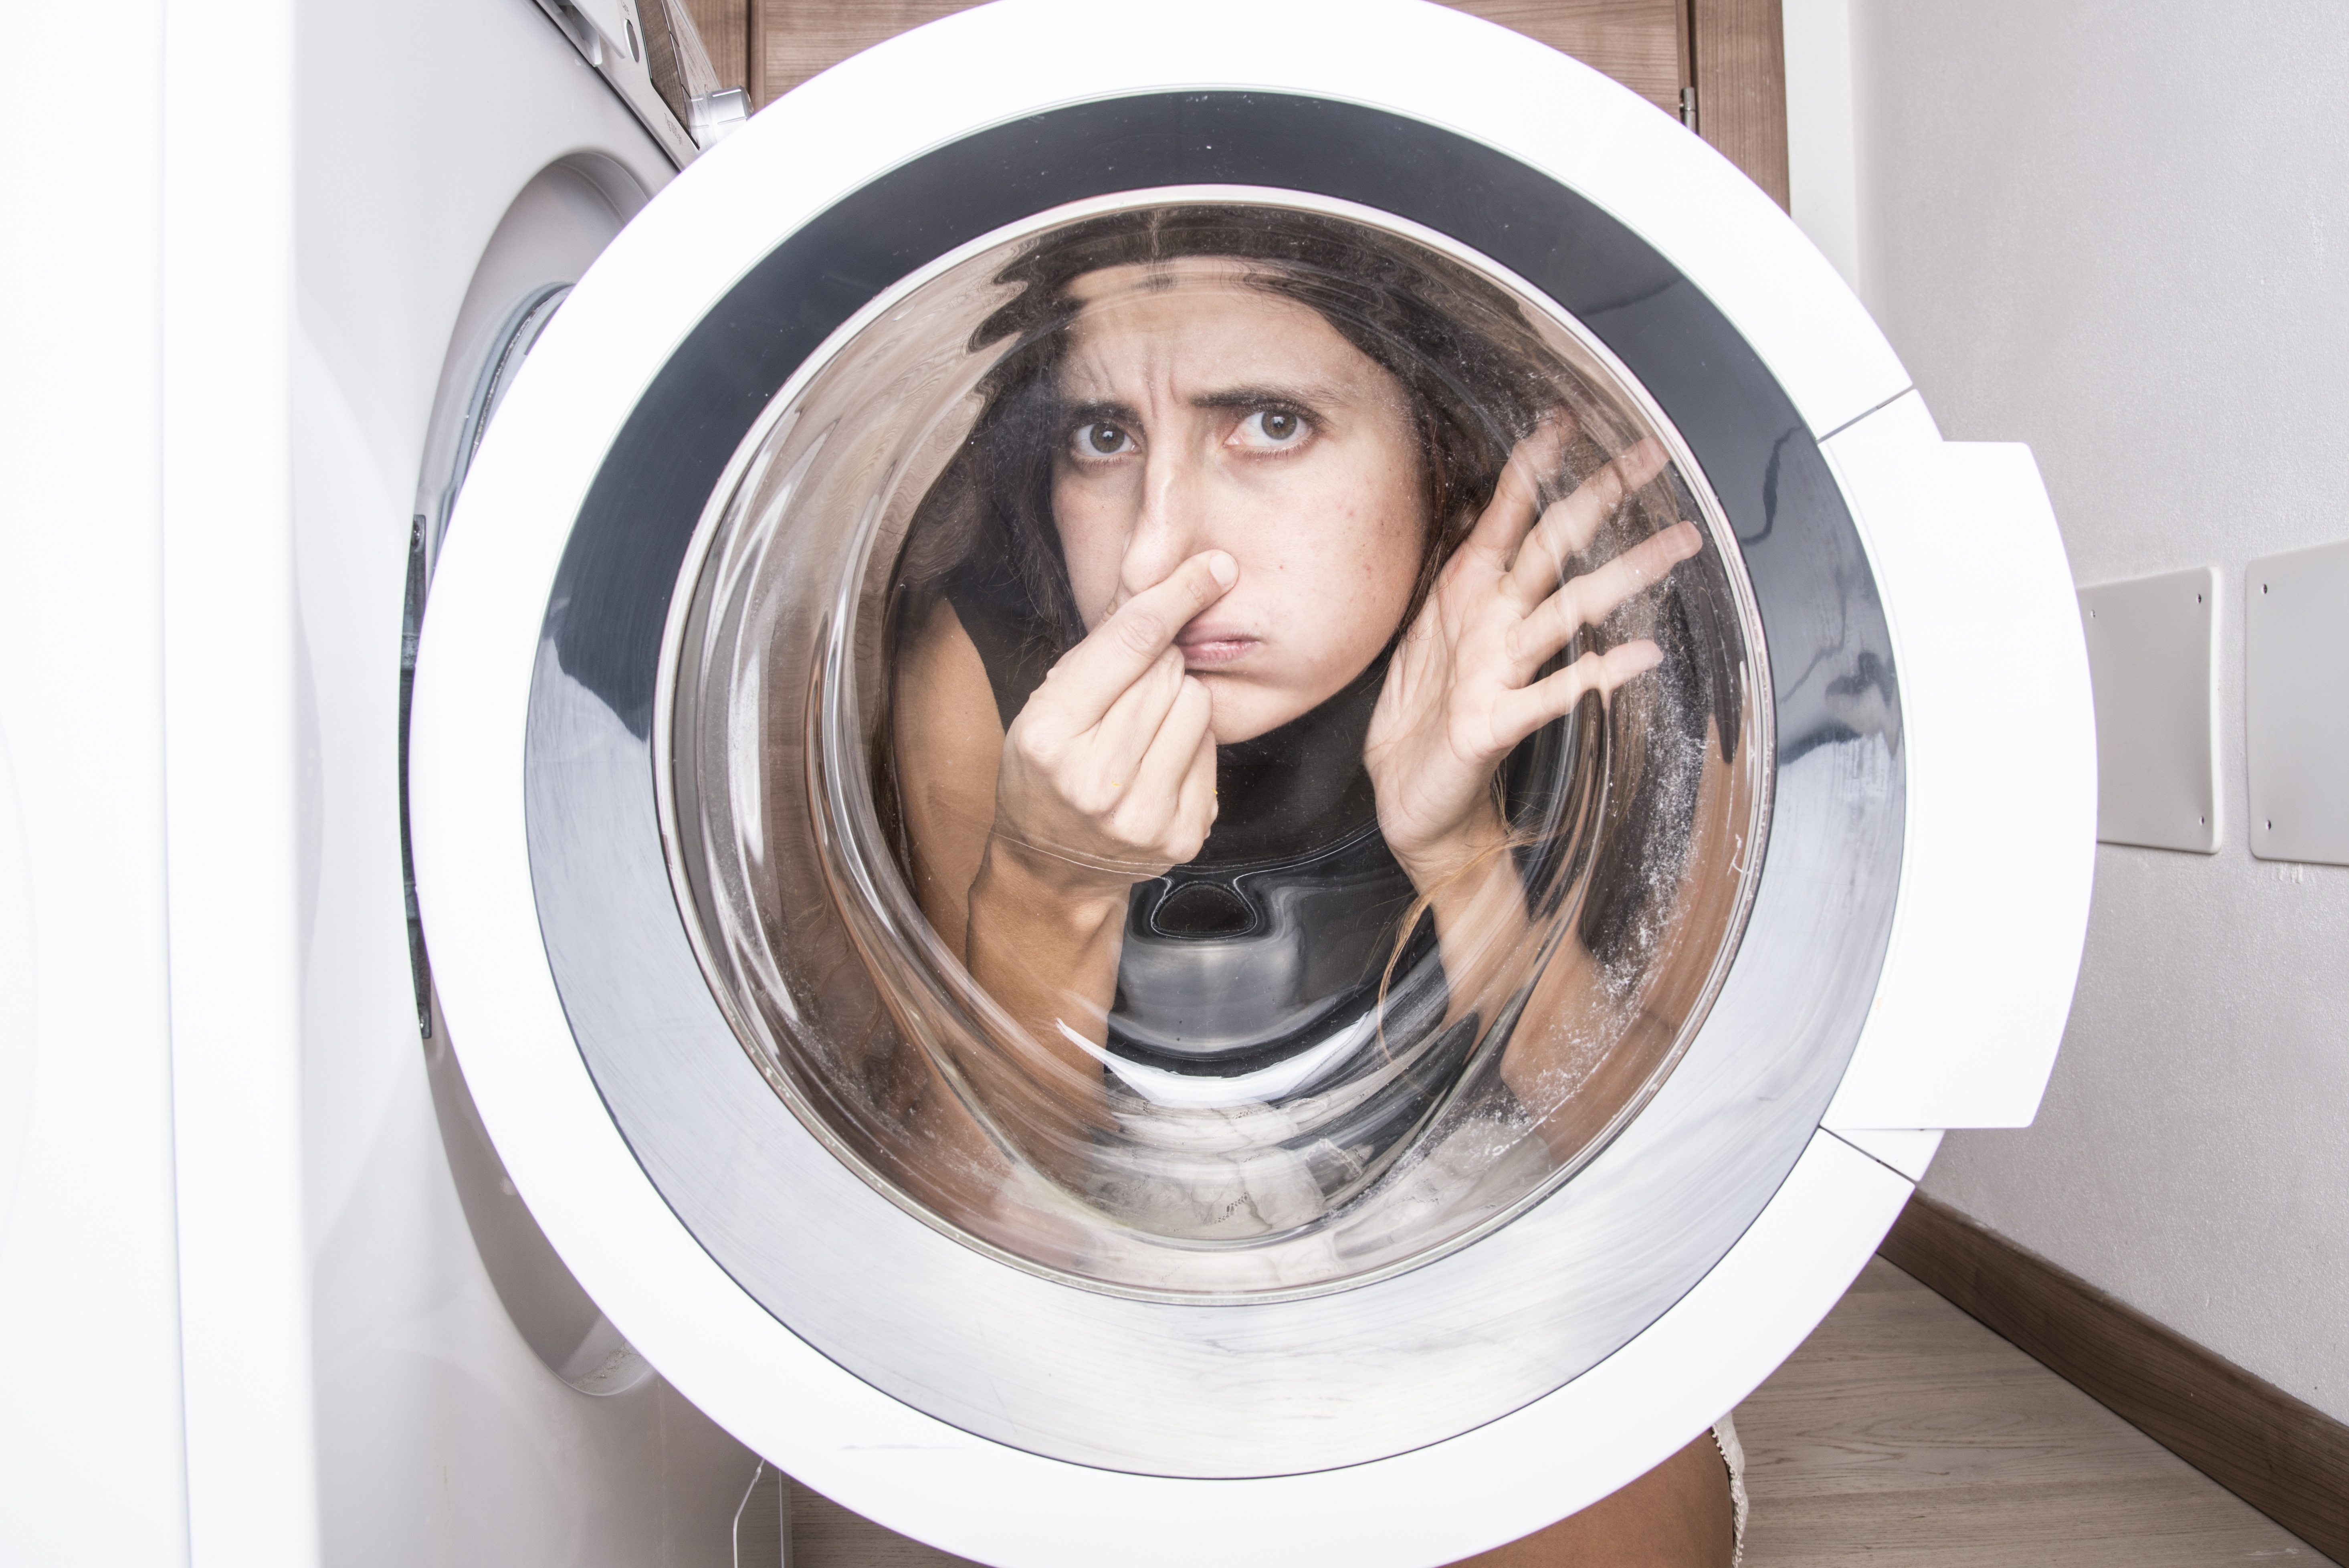 Полотенце неприятный запах. Запах в стиральной машине. Девушка в стиралке. Вид из стиральной машины. Вонючая стиральная машина.